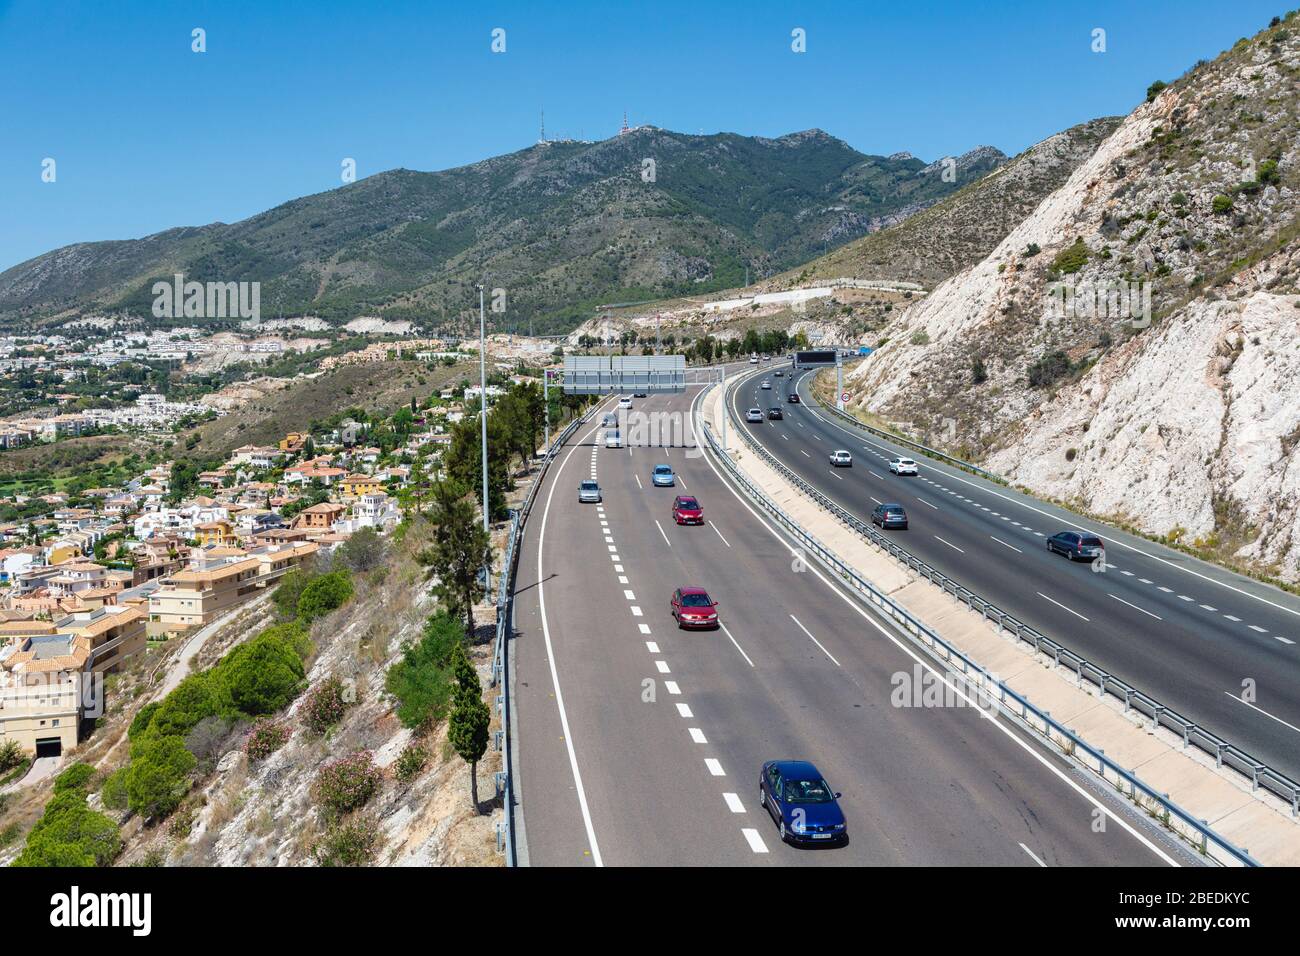 Vista aerea dell'autostrada A-7, e-15. Costa del Sol, Provincia di Malaga, Spagna. La città sulla sinistra è Arroyo de la Miel. Foto Stock